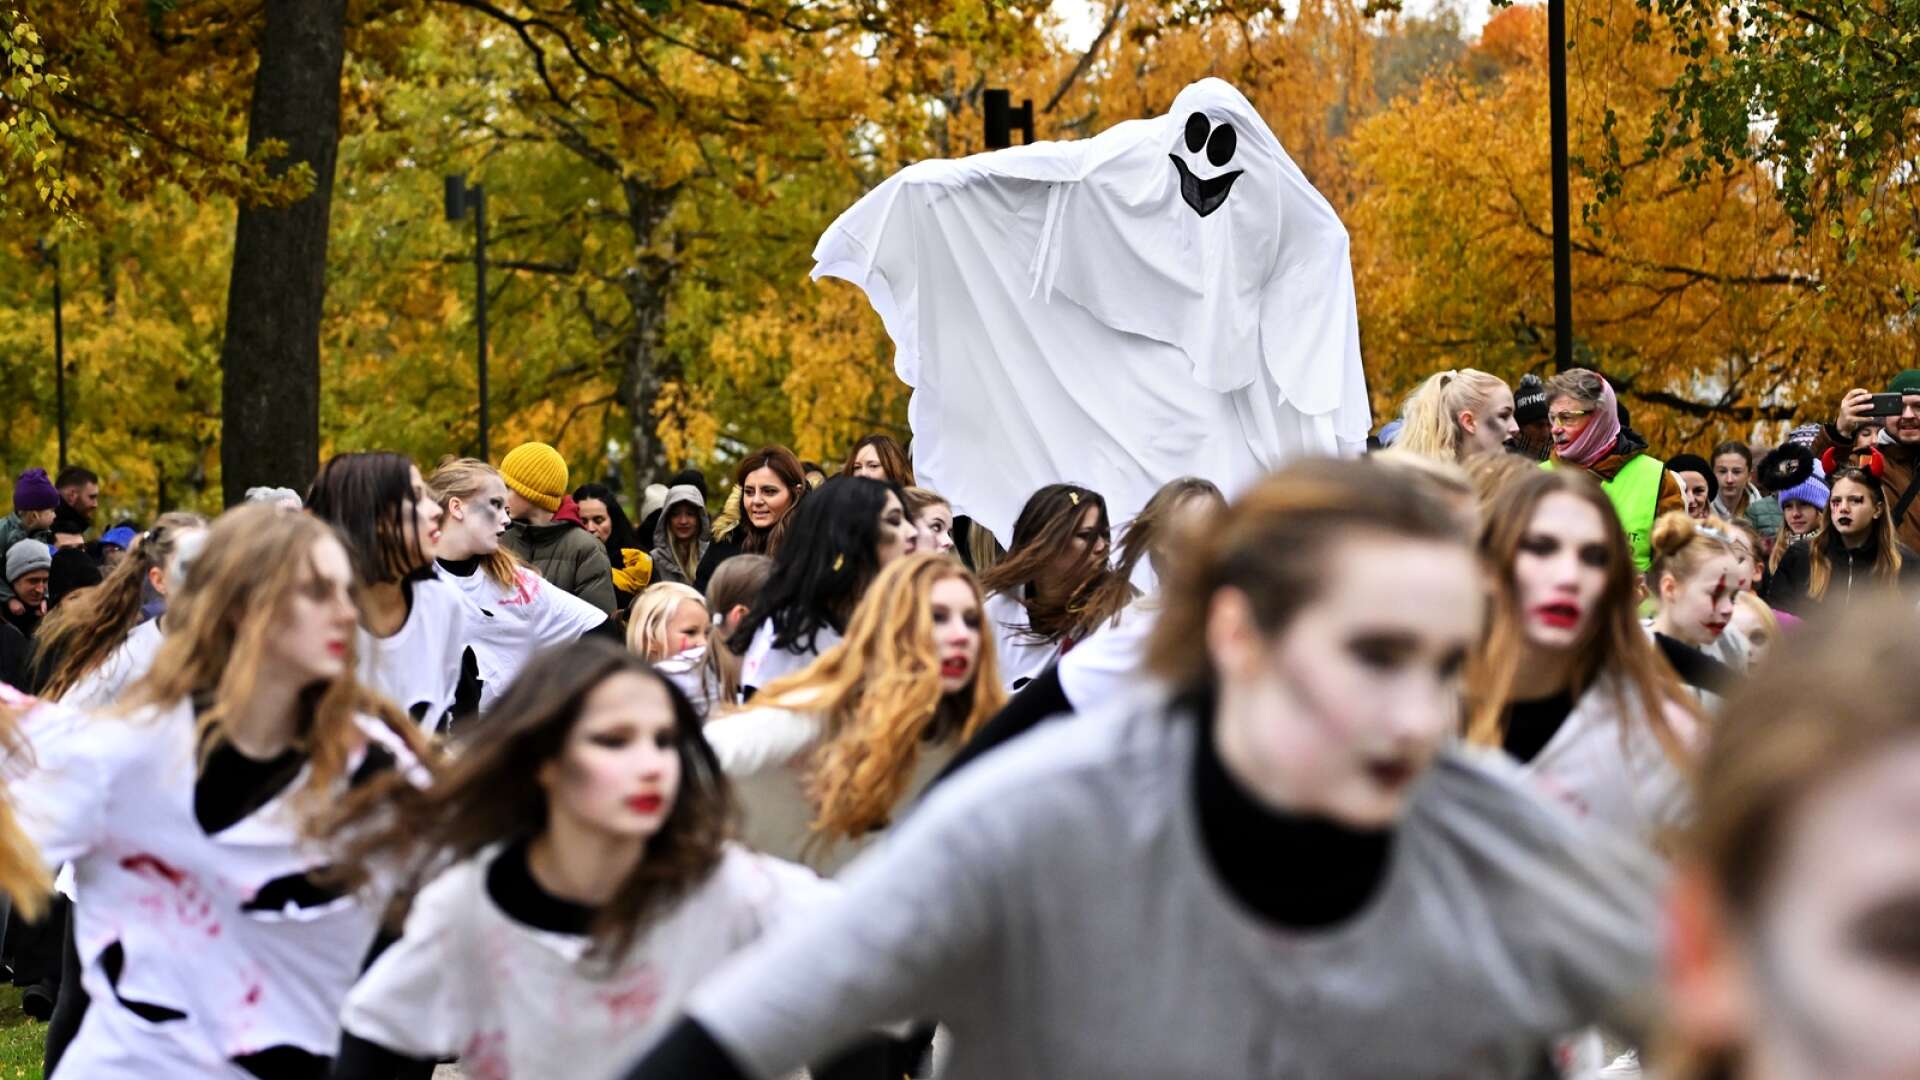 Gundettabalettens dansare ledde den läskiga halloweenparaden i centrala Karlstad under övervakning av spöket Labans pappa.